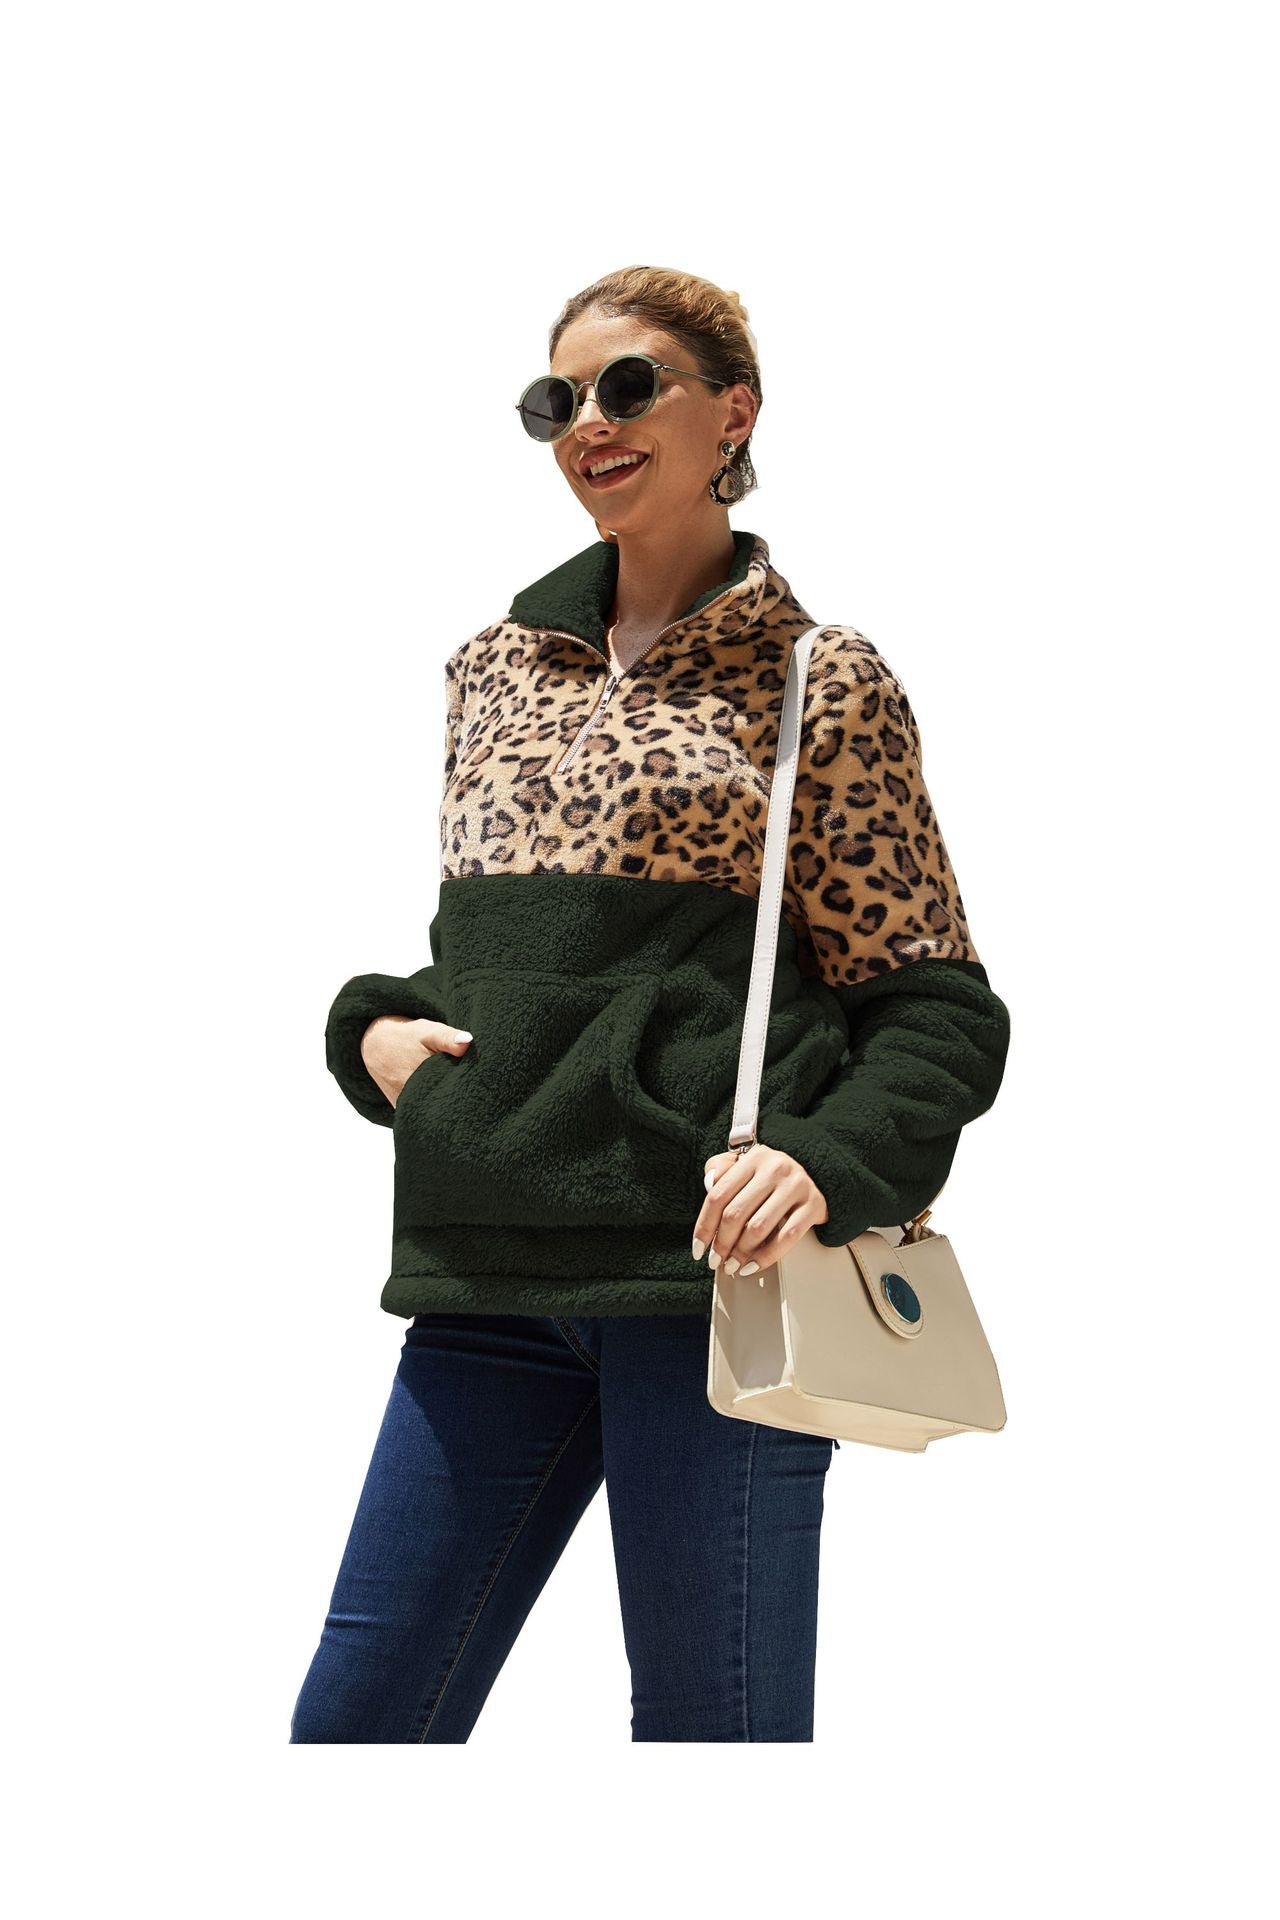 Casual Winter Leopard Long Sleeves Women Tops